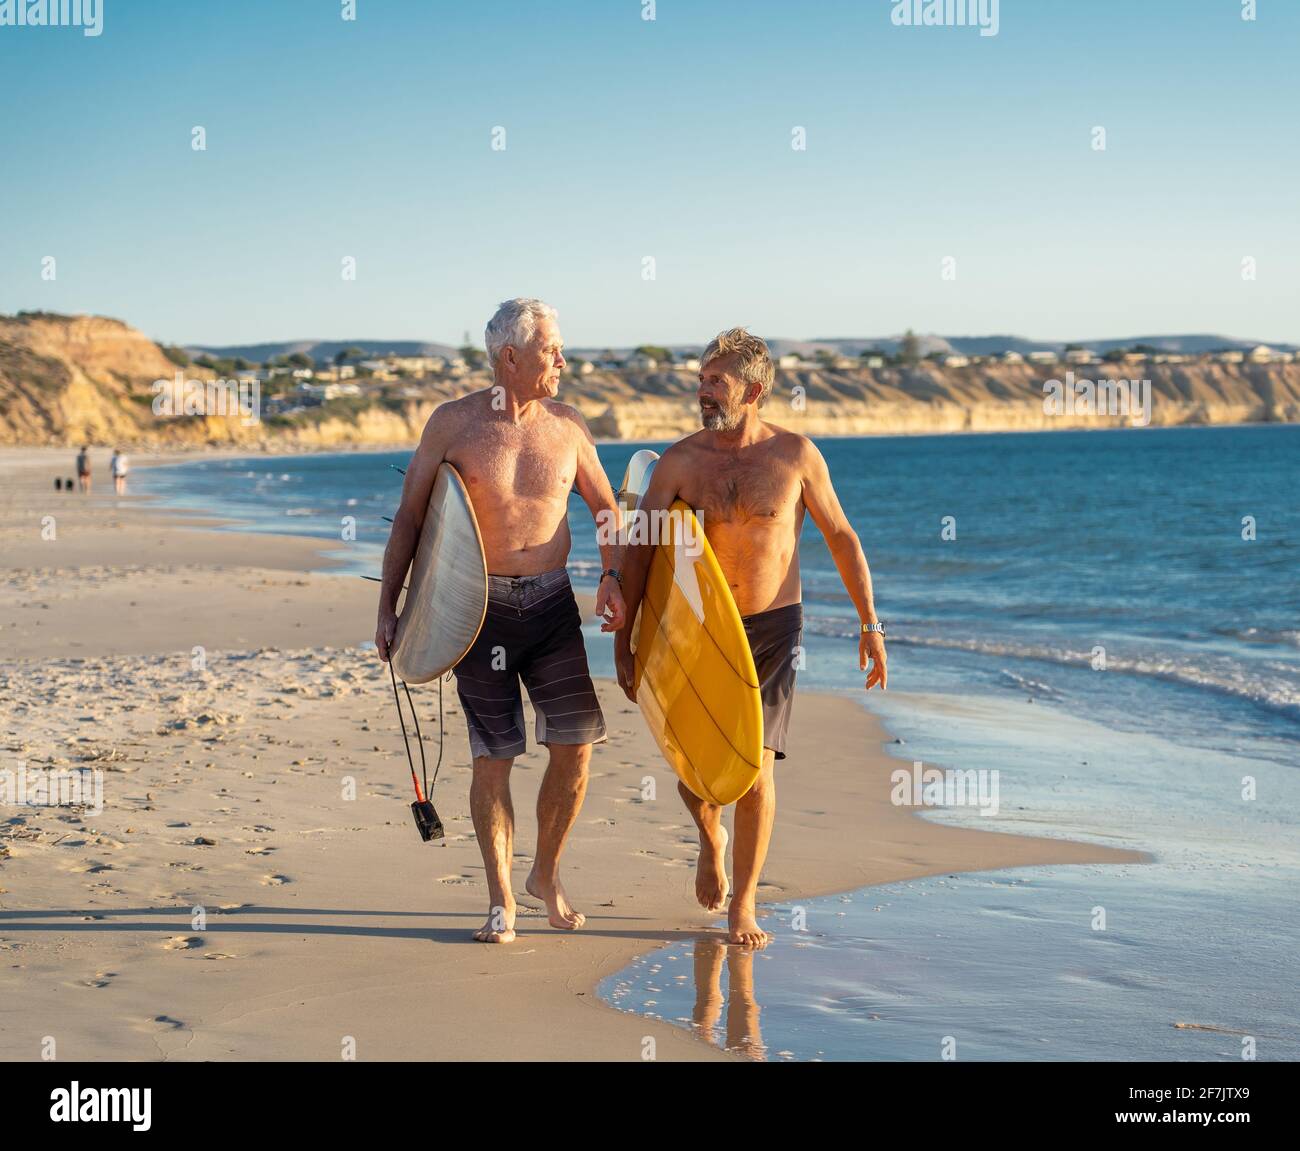 Deux hommes matures marchant avec des planches de surf sur la belle plage appréciant le paradis et le mode de vie de retraite. Une tenue attrayante pour les adultes Banque D'Images